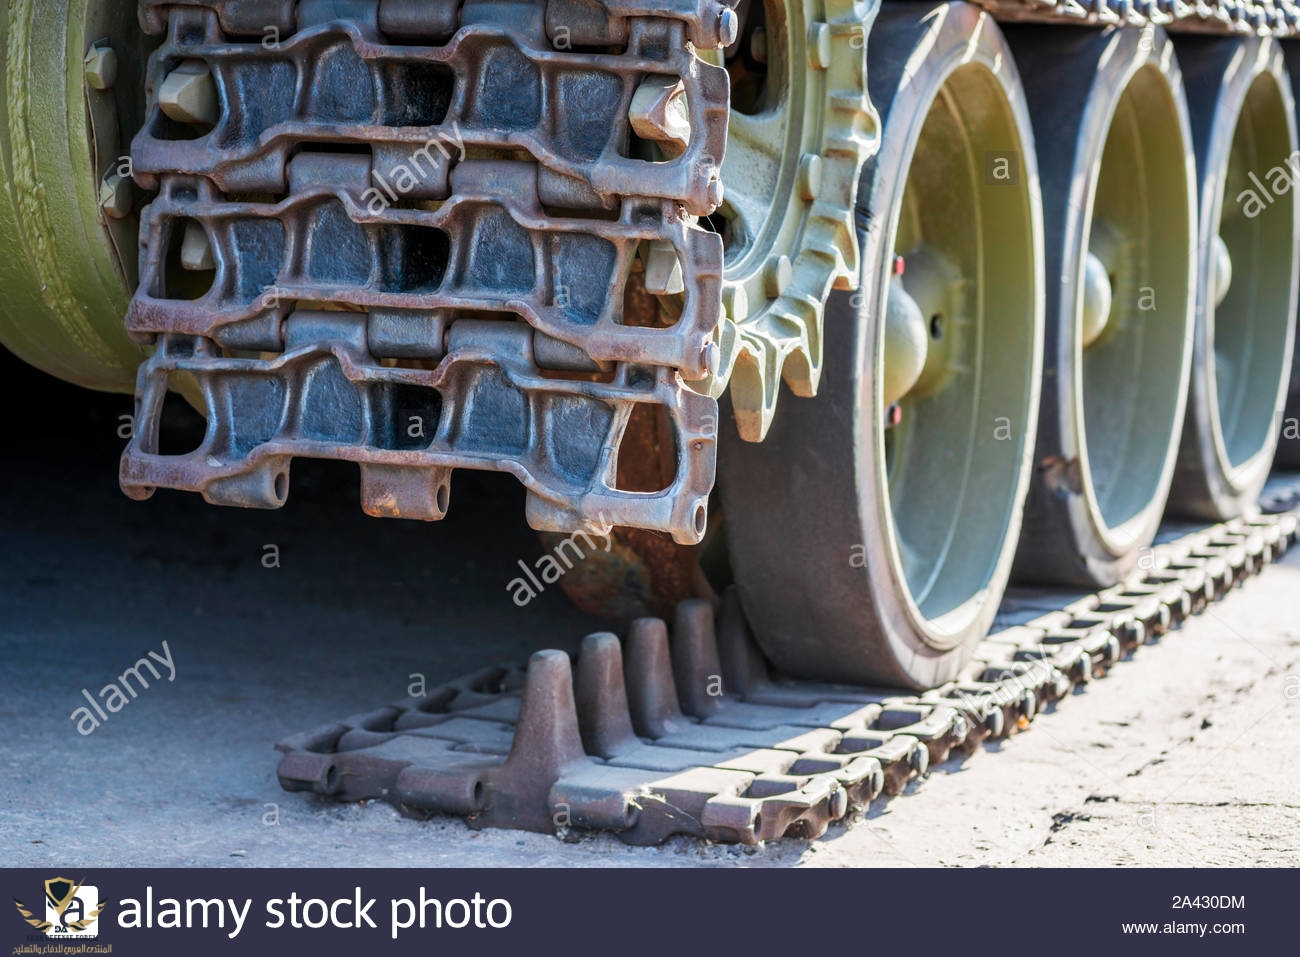 broken-tank-caterpillar-details-of-a-military-tank-tank-tracks-2A430DM.jpg